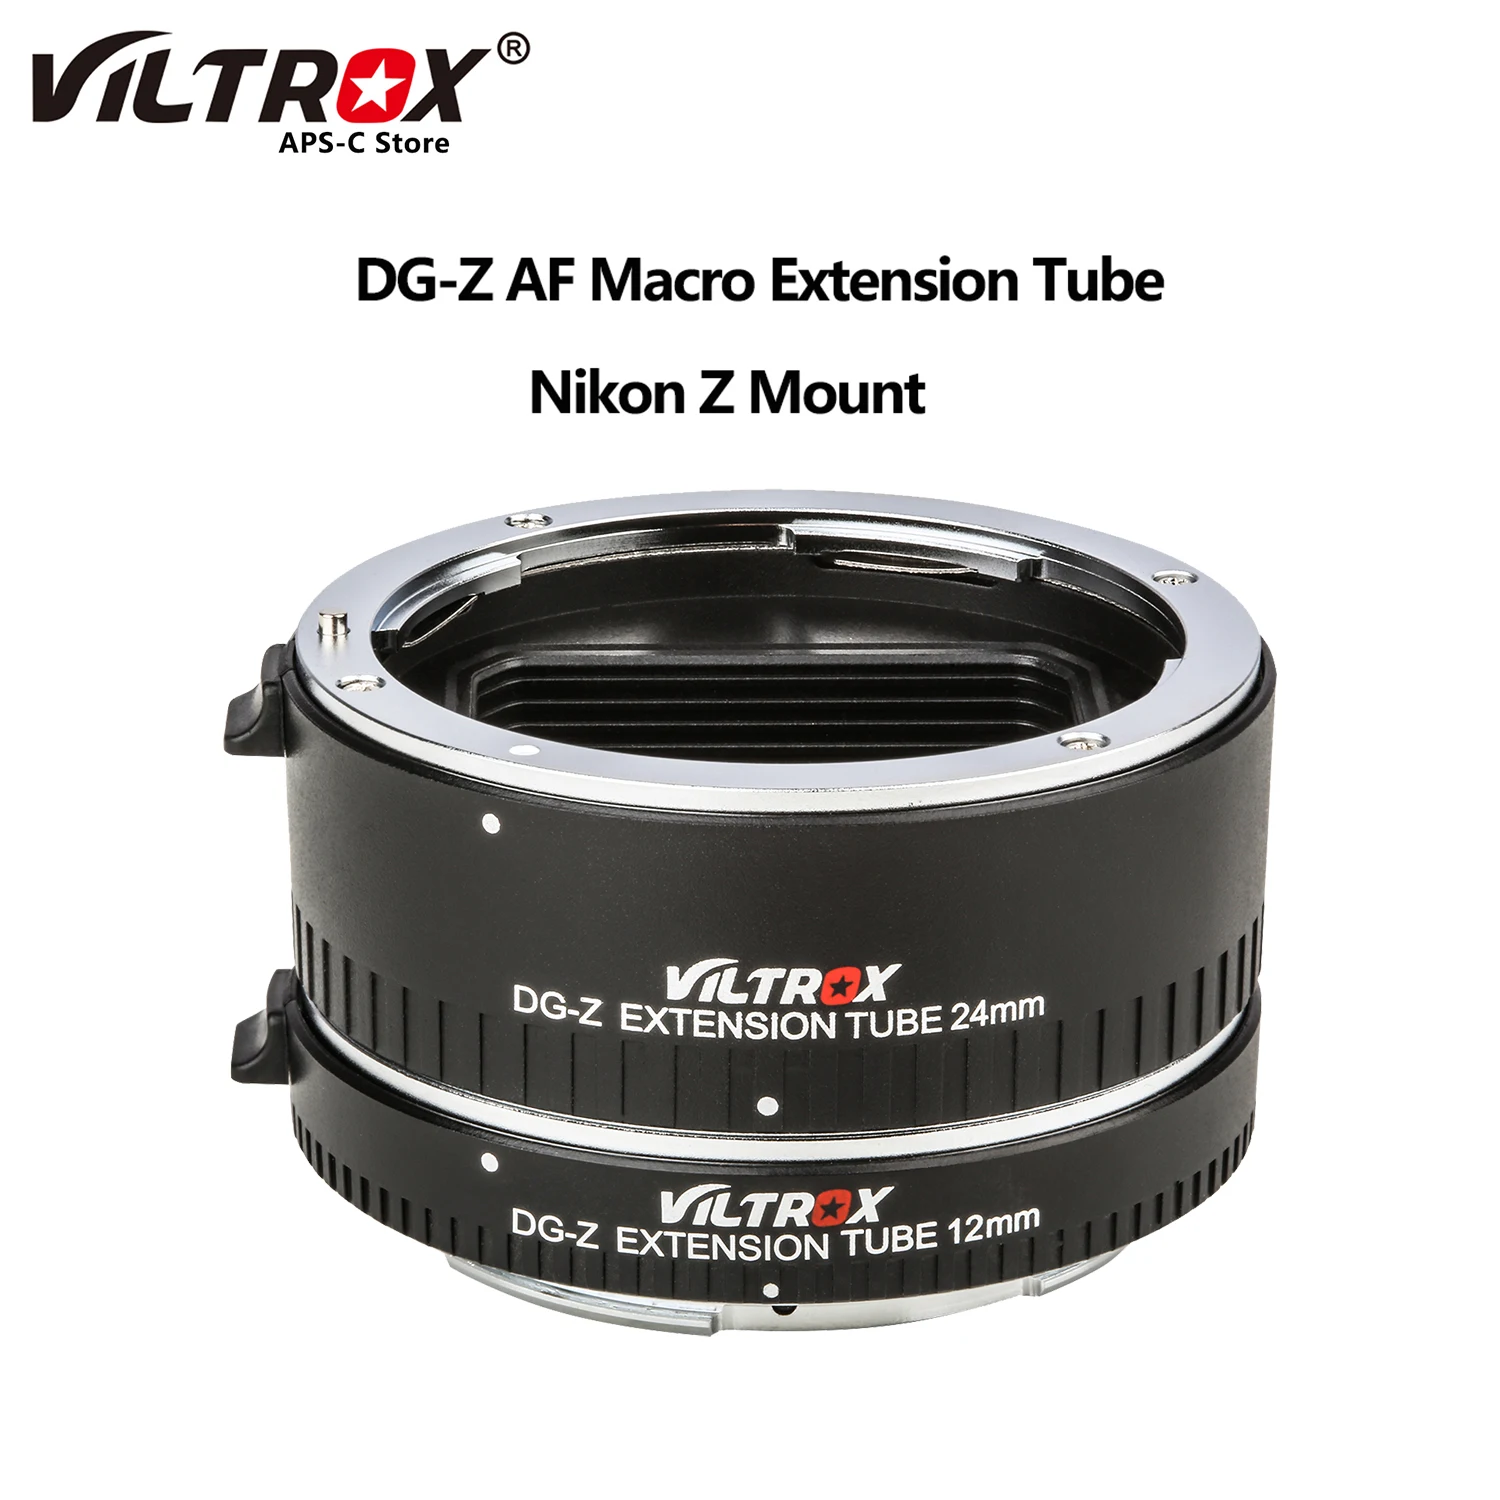 Viltrox DG-Z Auto Focus AF Macro Extension Tube Lens Adapter Ring (12mm+24mm) Aperture Adjust for Nikon Z Mount Camera Lens Z6